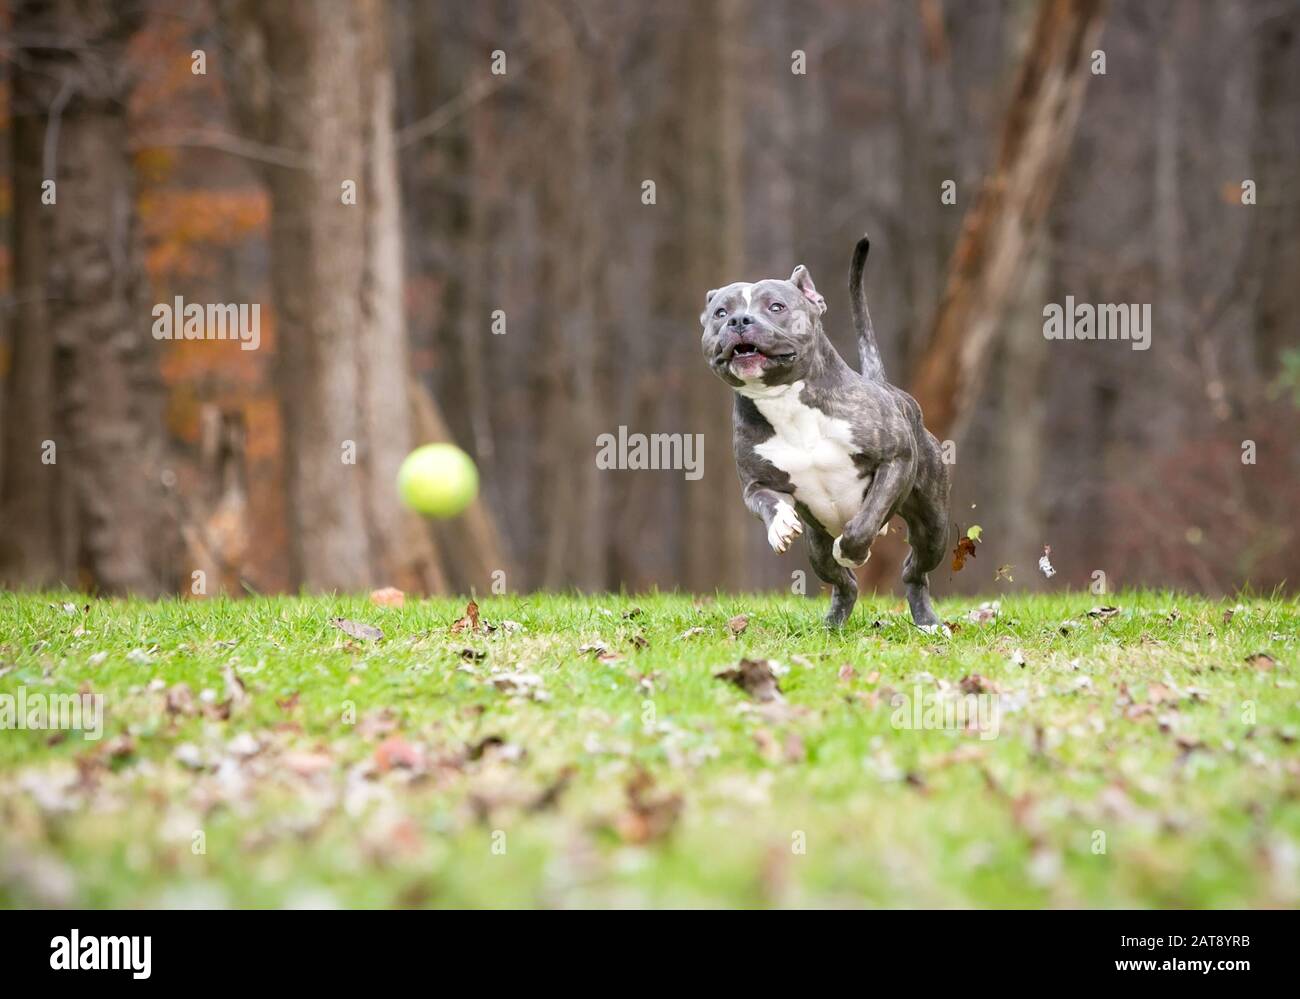 Un chien de race mixte, le Pit Bull Terrier bleu et blanc, chassant une balle à l'extérieur Banque D'Images